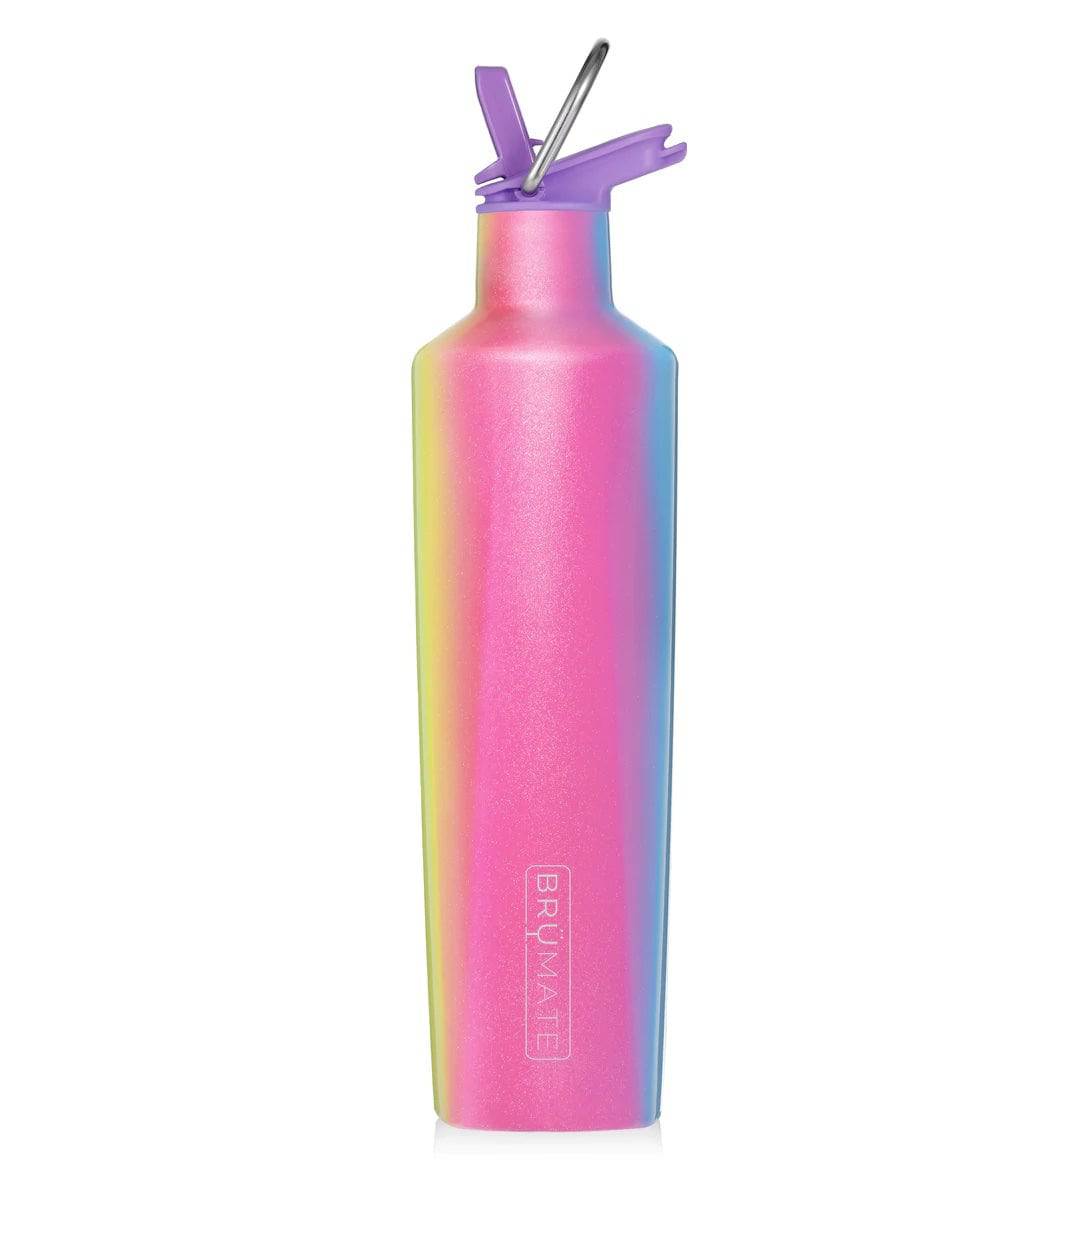 BRUMATE  Glitter Flask - Violet